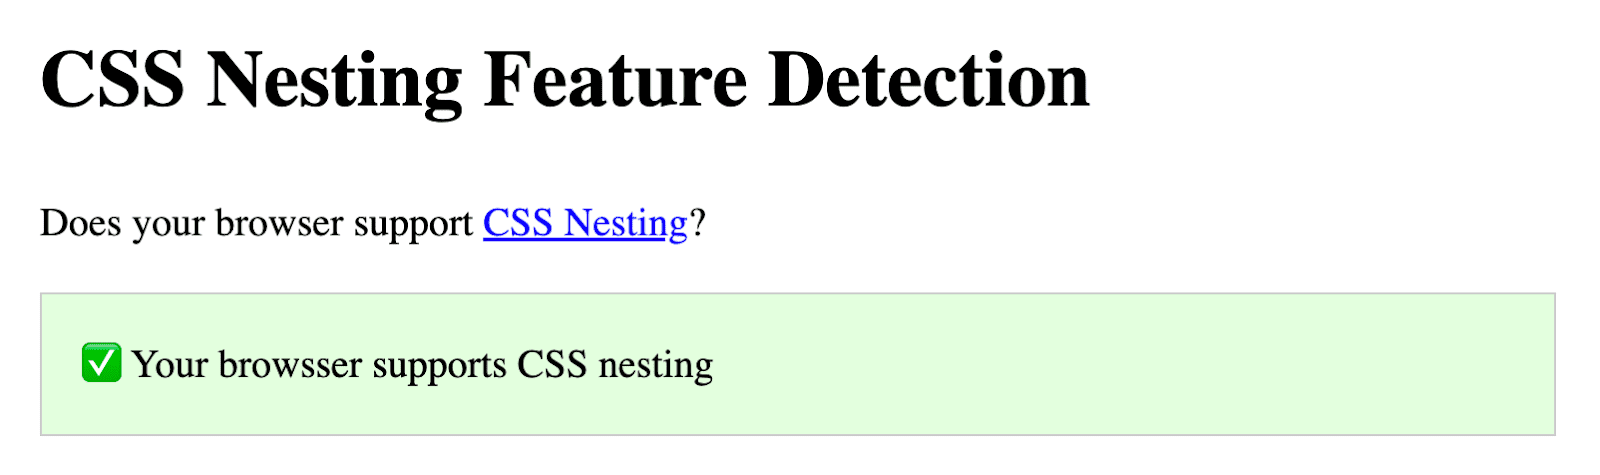 Screenshot demo Codepen Bramus, yang menanyakan apakah browser Anda mendukung nesting CSS. Di bawah pertanyaan itu terdapat kotak hijau, yang menandakan dukungan.